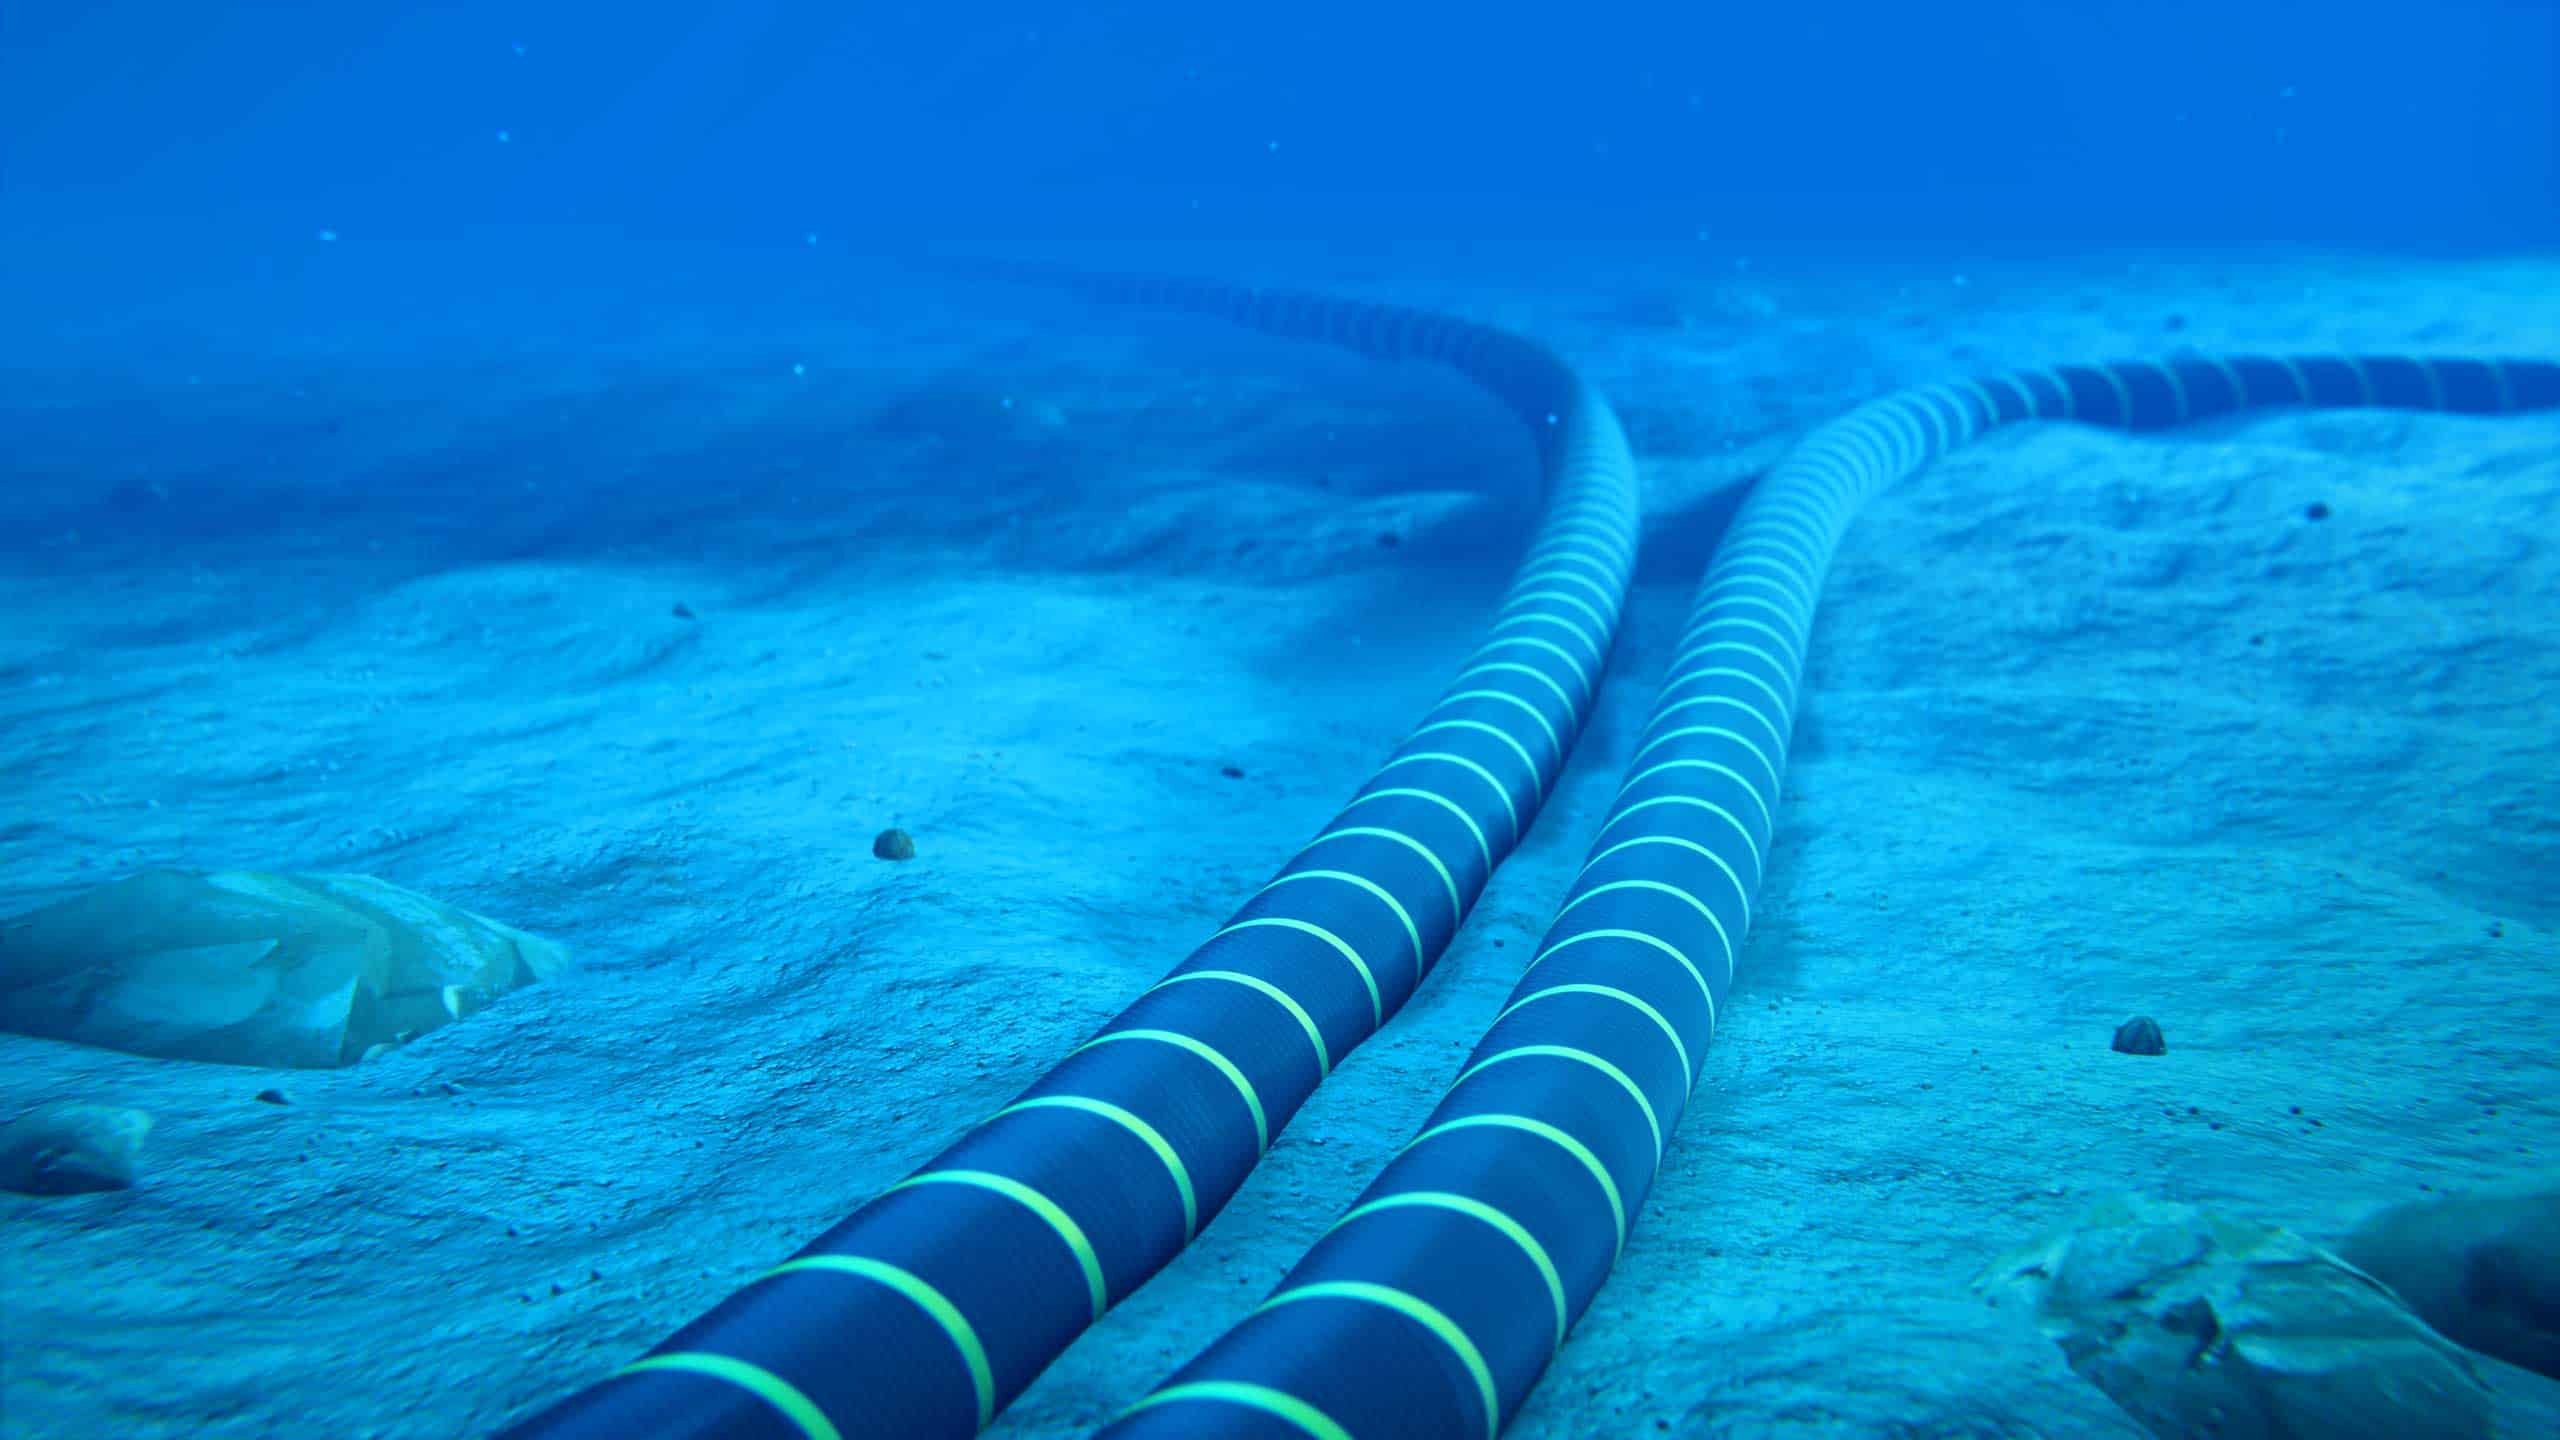 undersea cables